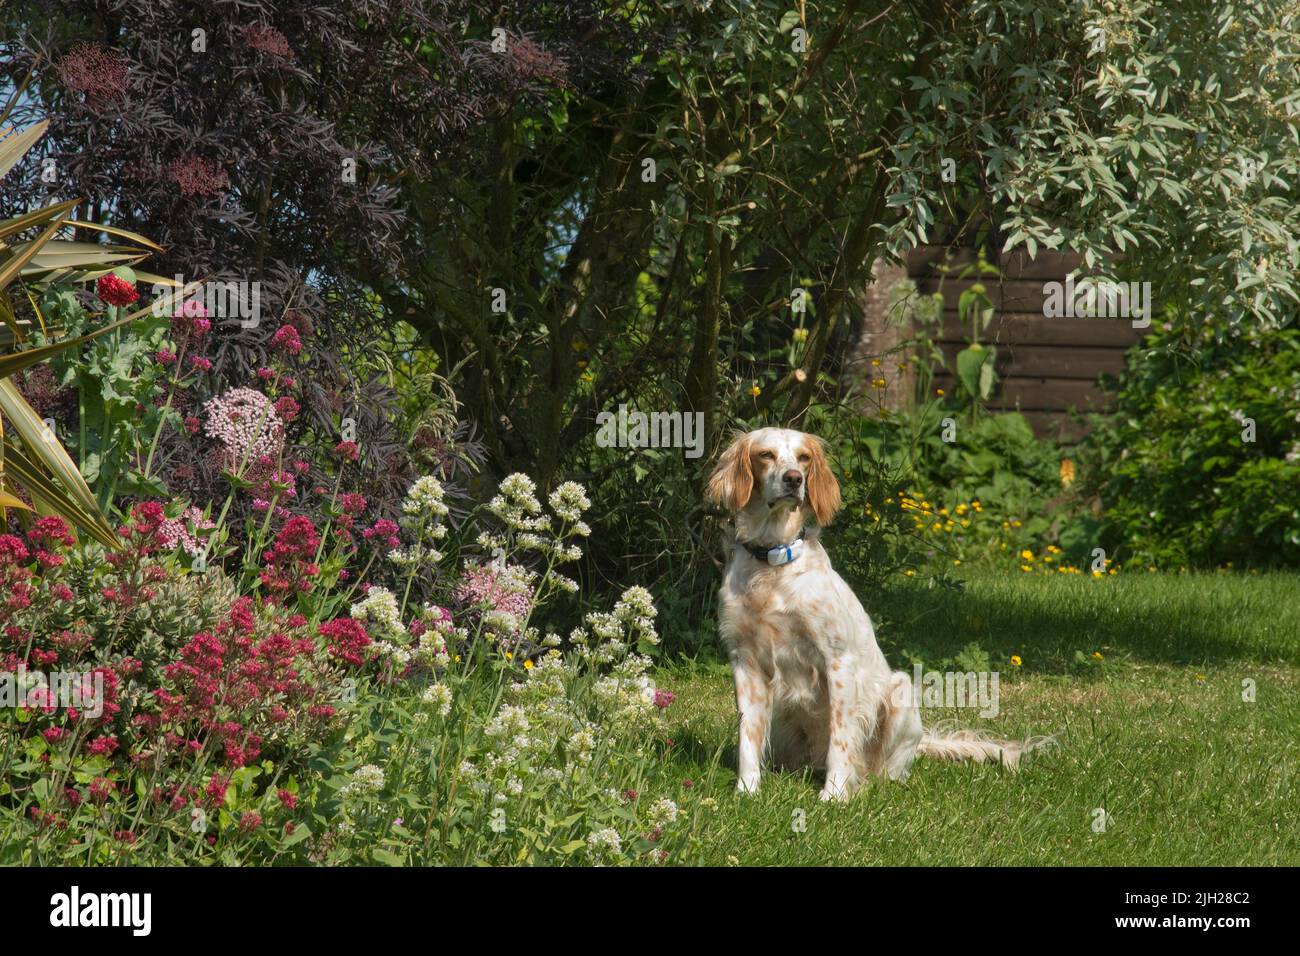 Perro setter inglés sentado en la hierba del jardín junto a flores rojas, blancas y rosadas y bajo los árboles mirando, Berkshire, junio Foto de stock